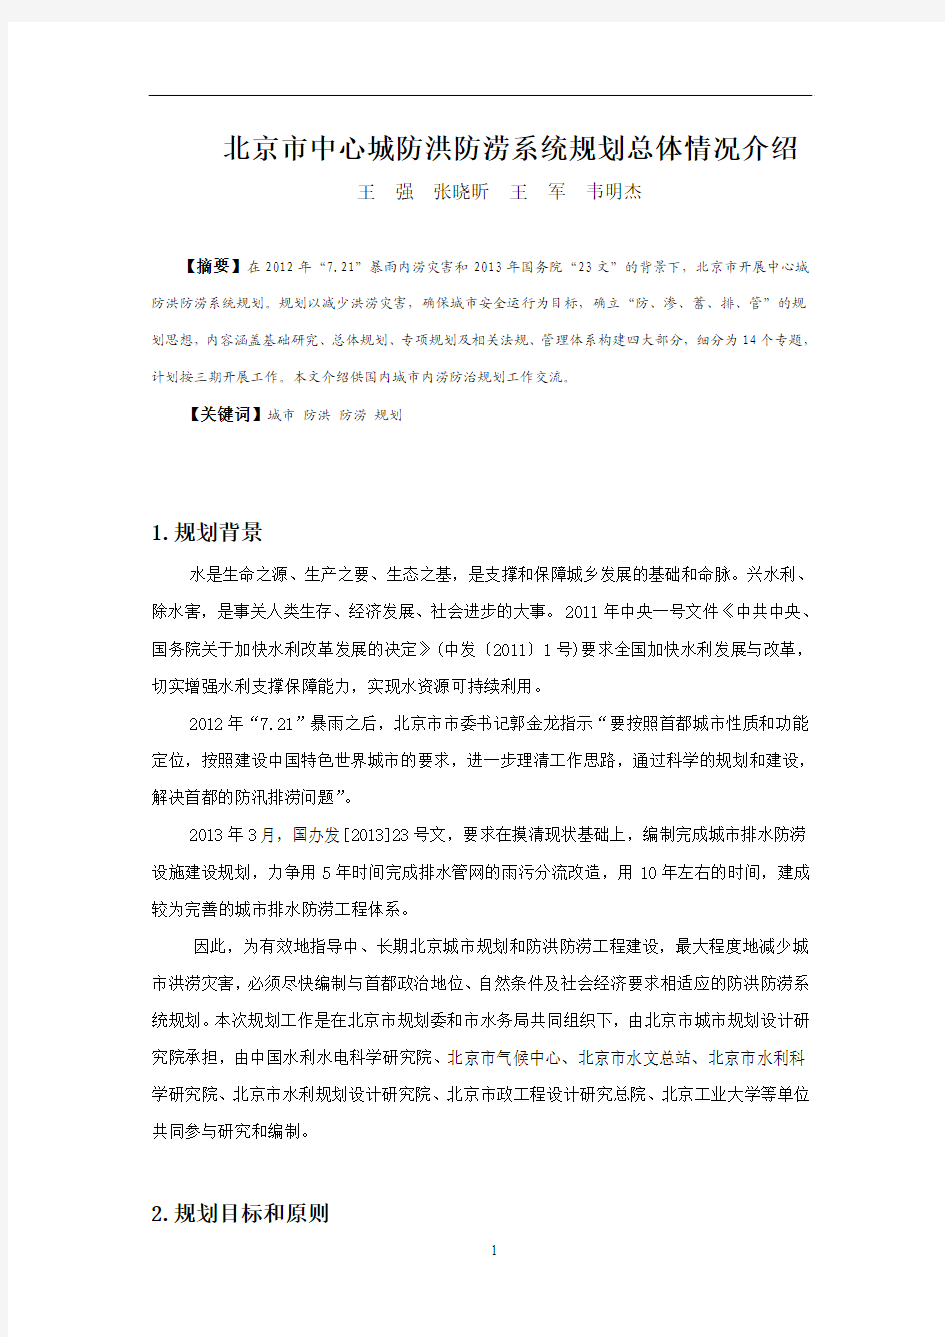 北京市中心城防洪防涝系统规划总体情况介绍